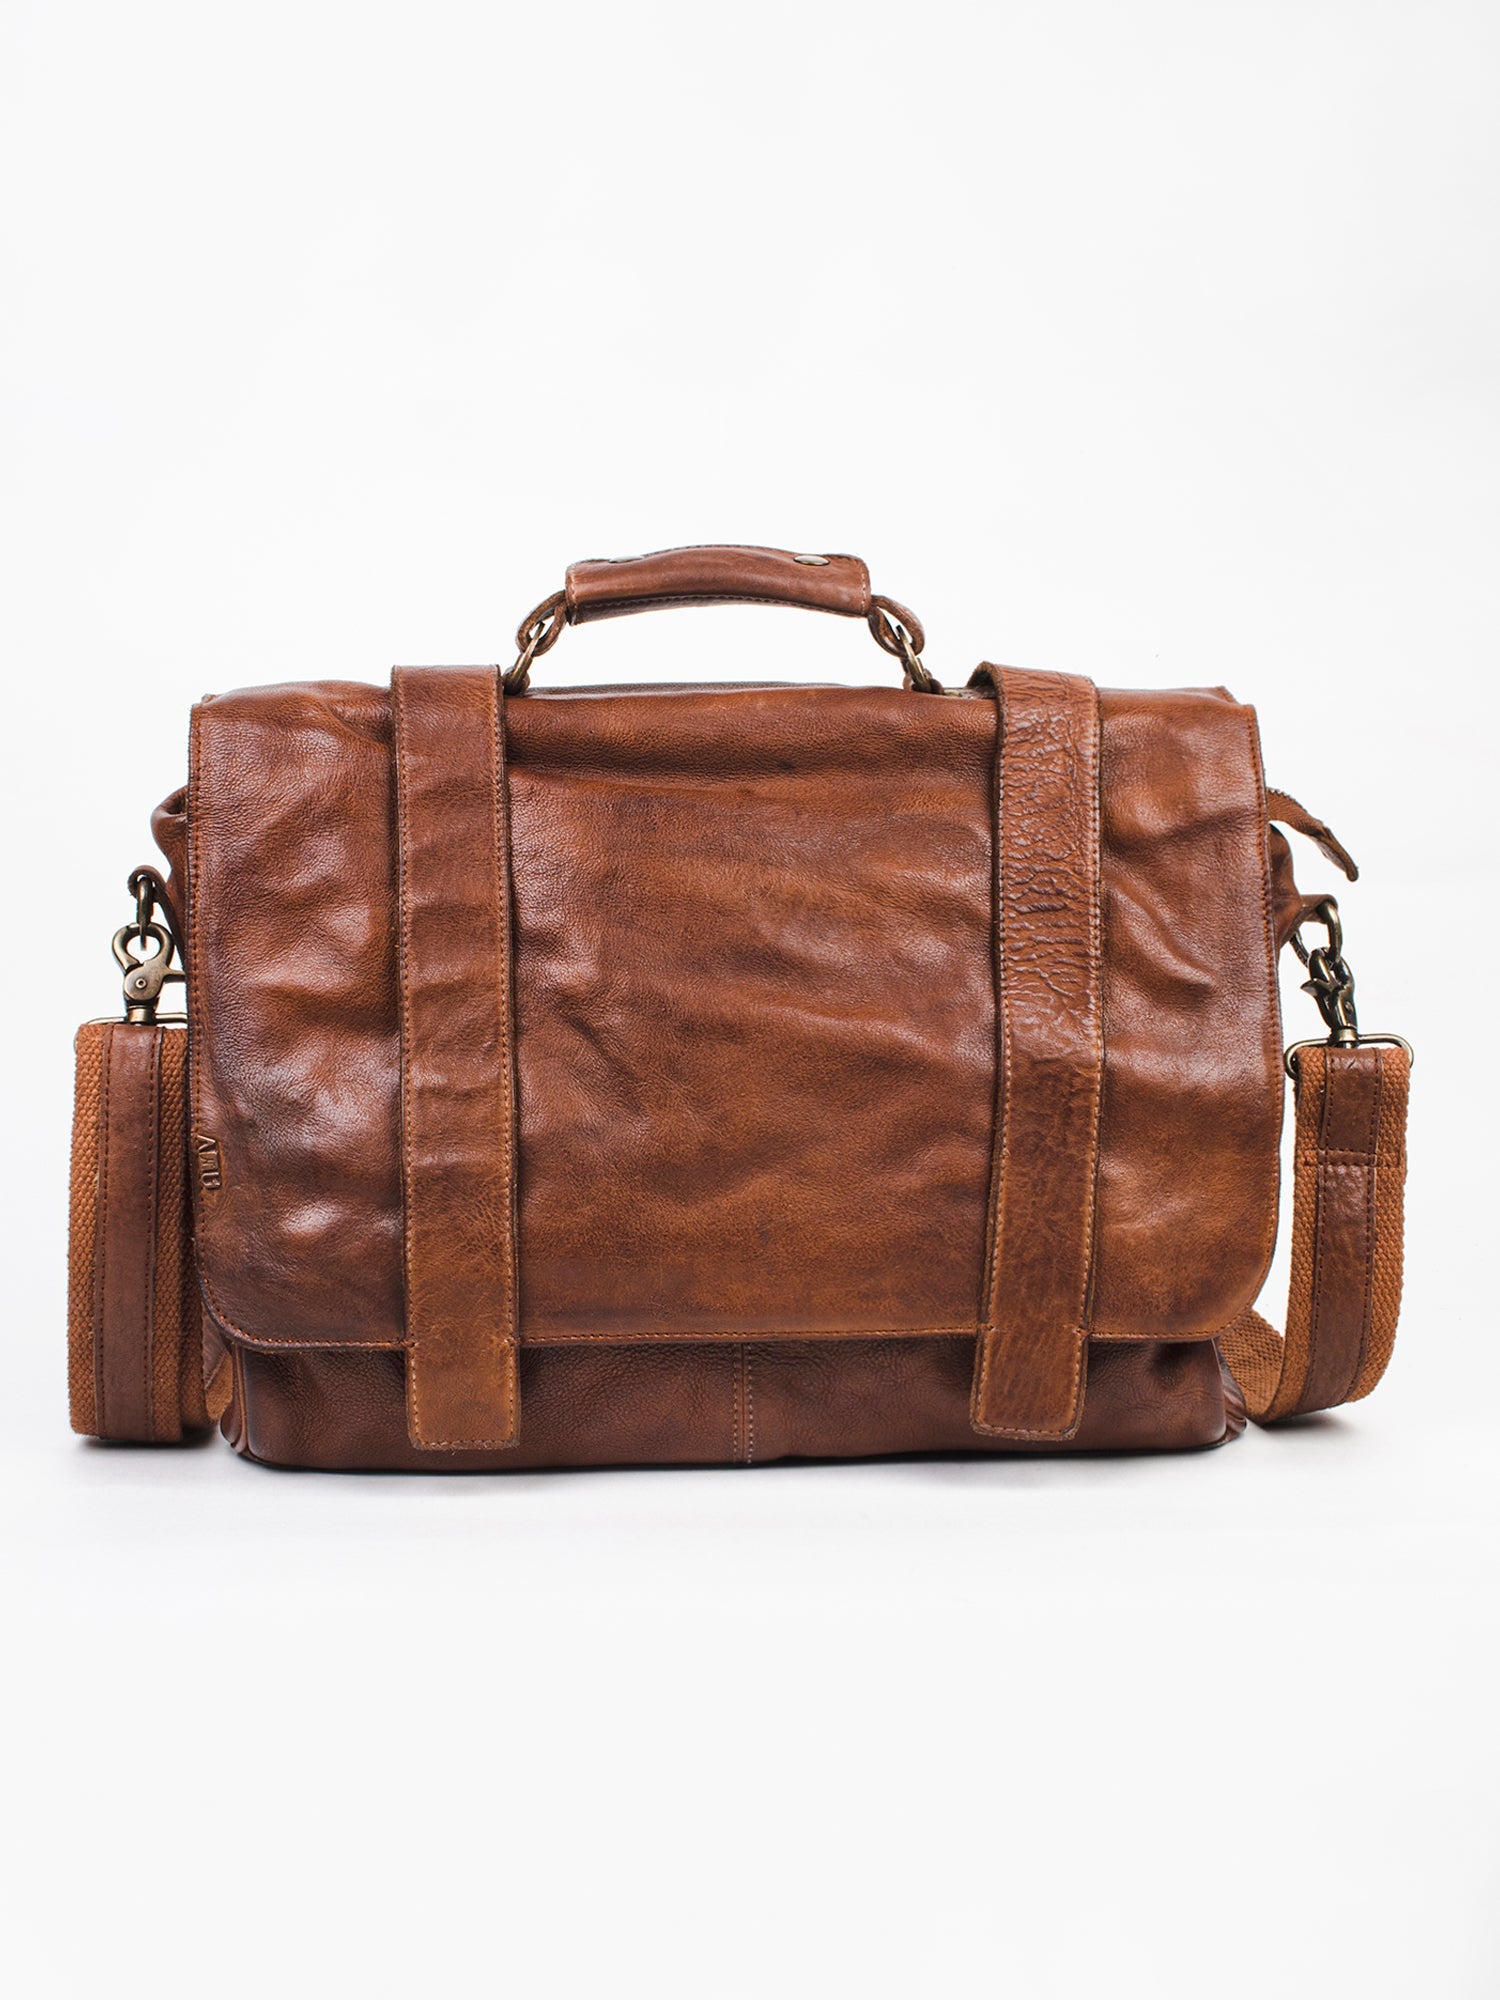 Vintage Cognac Leather Men's Messenger Bag By Art N Vintage